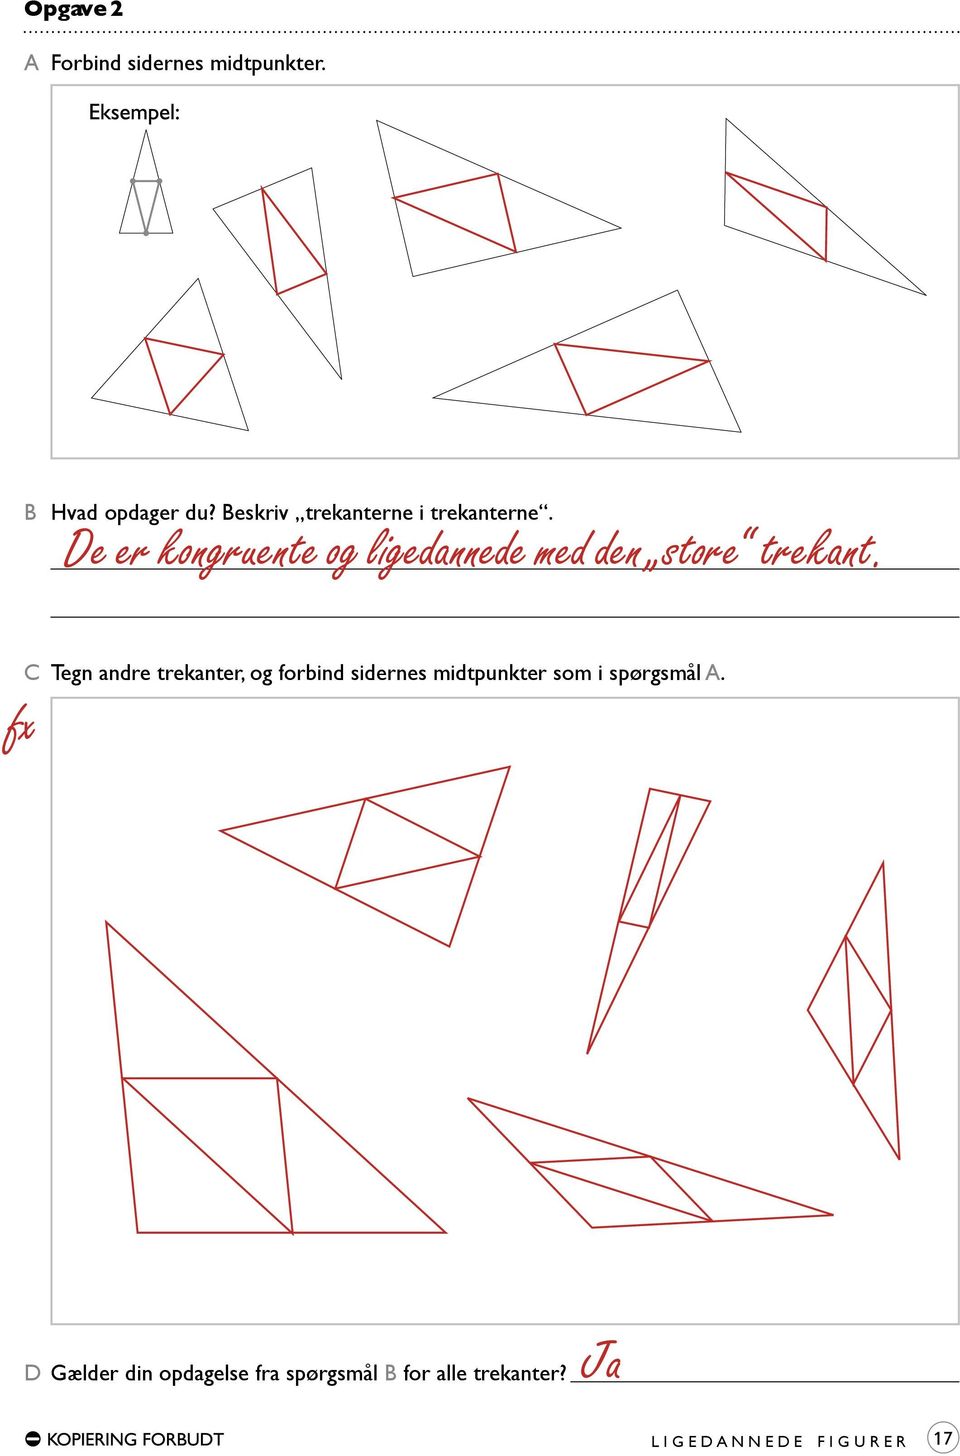 C Tegn andre trekanter, og forbind sidernes midtpunkter som i